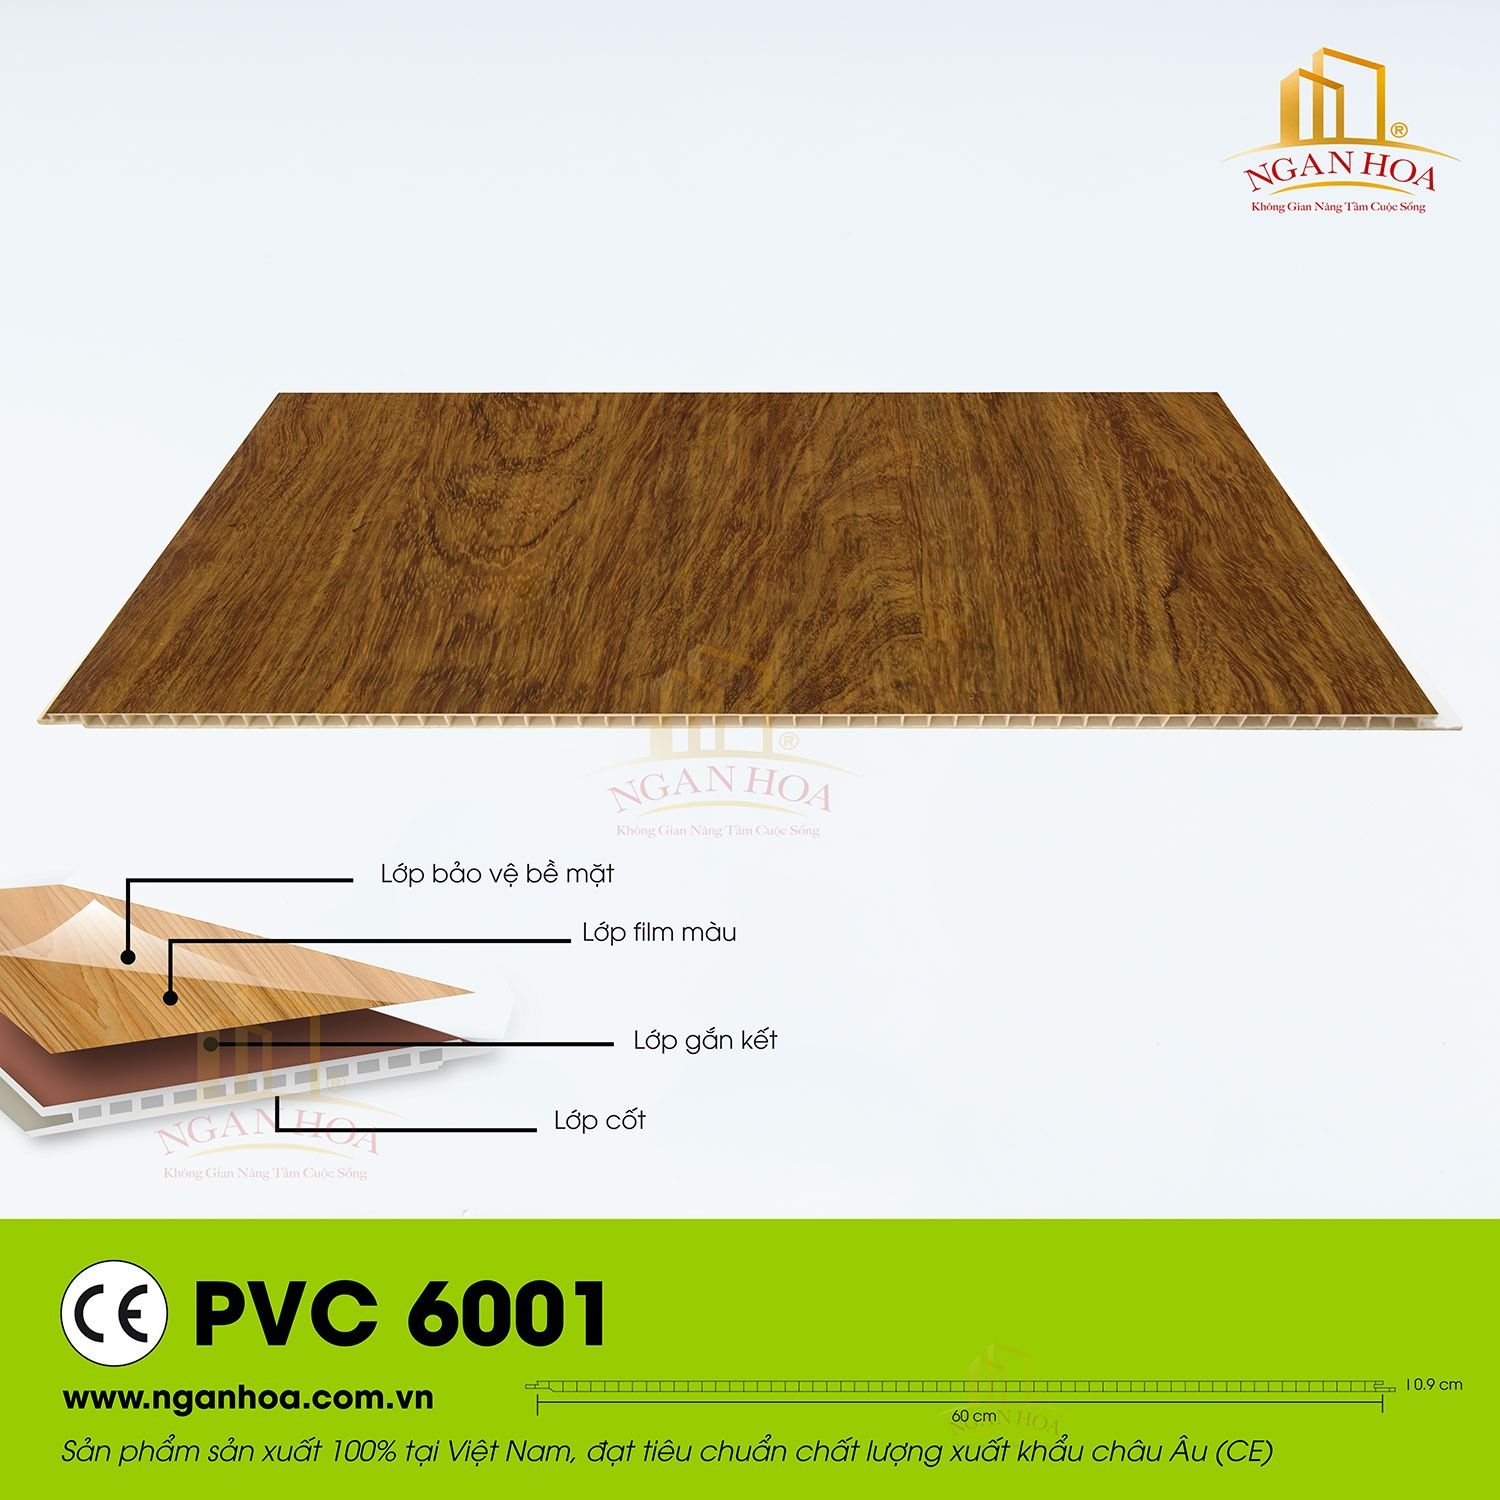 PVC 6001 1